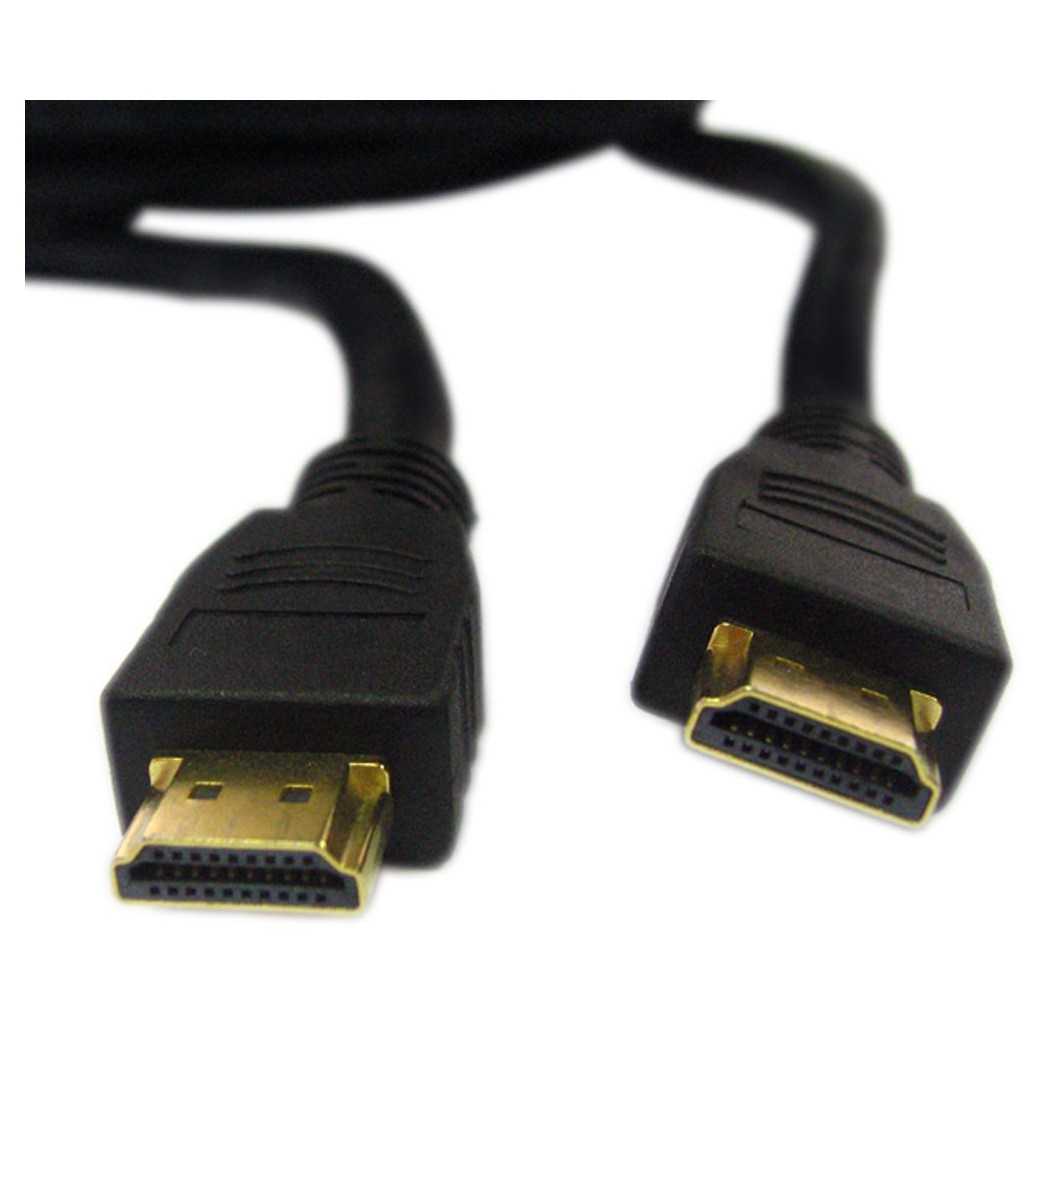 Cable HDMI 10m - Accessoires Ordinateurs - Yaratech #1 Boutique Hightech